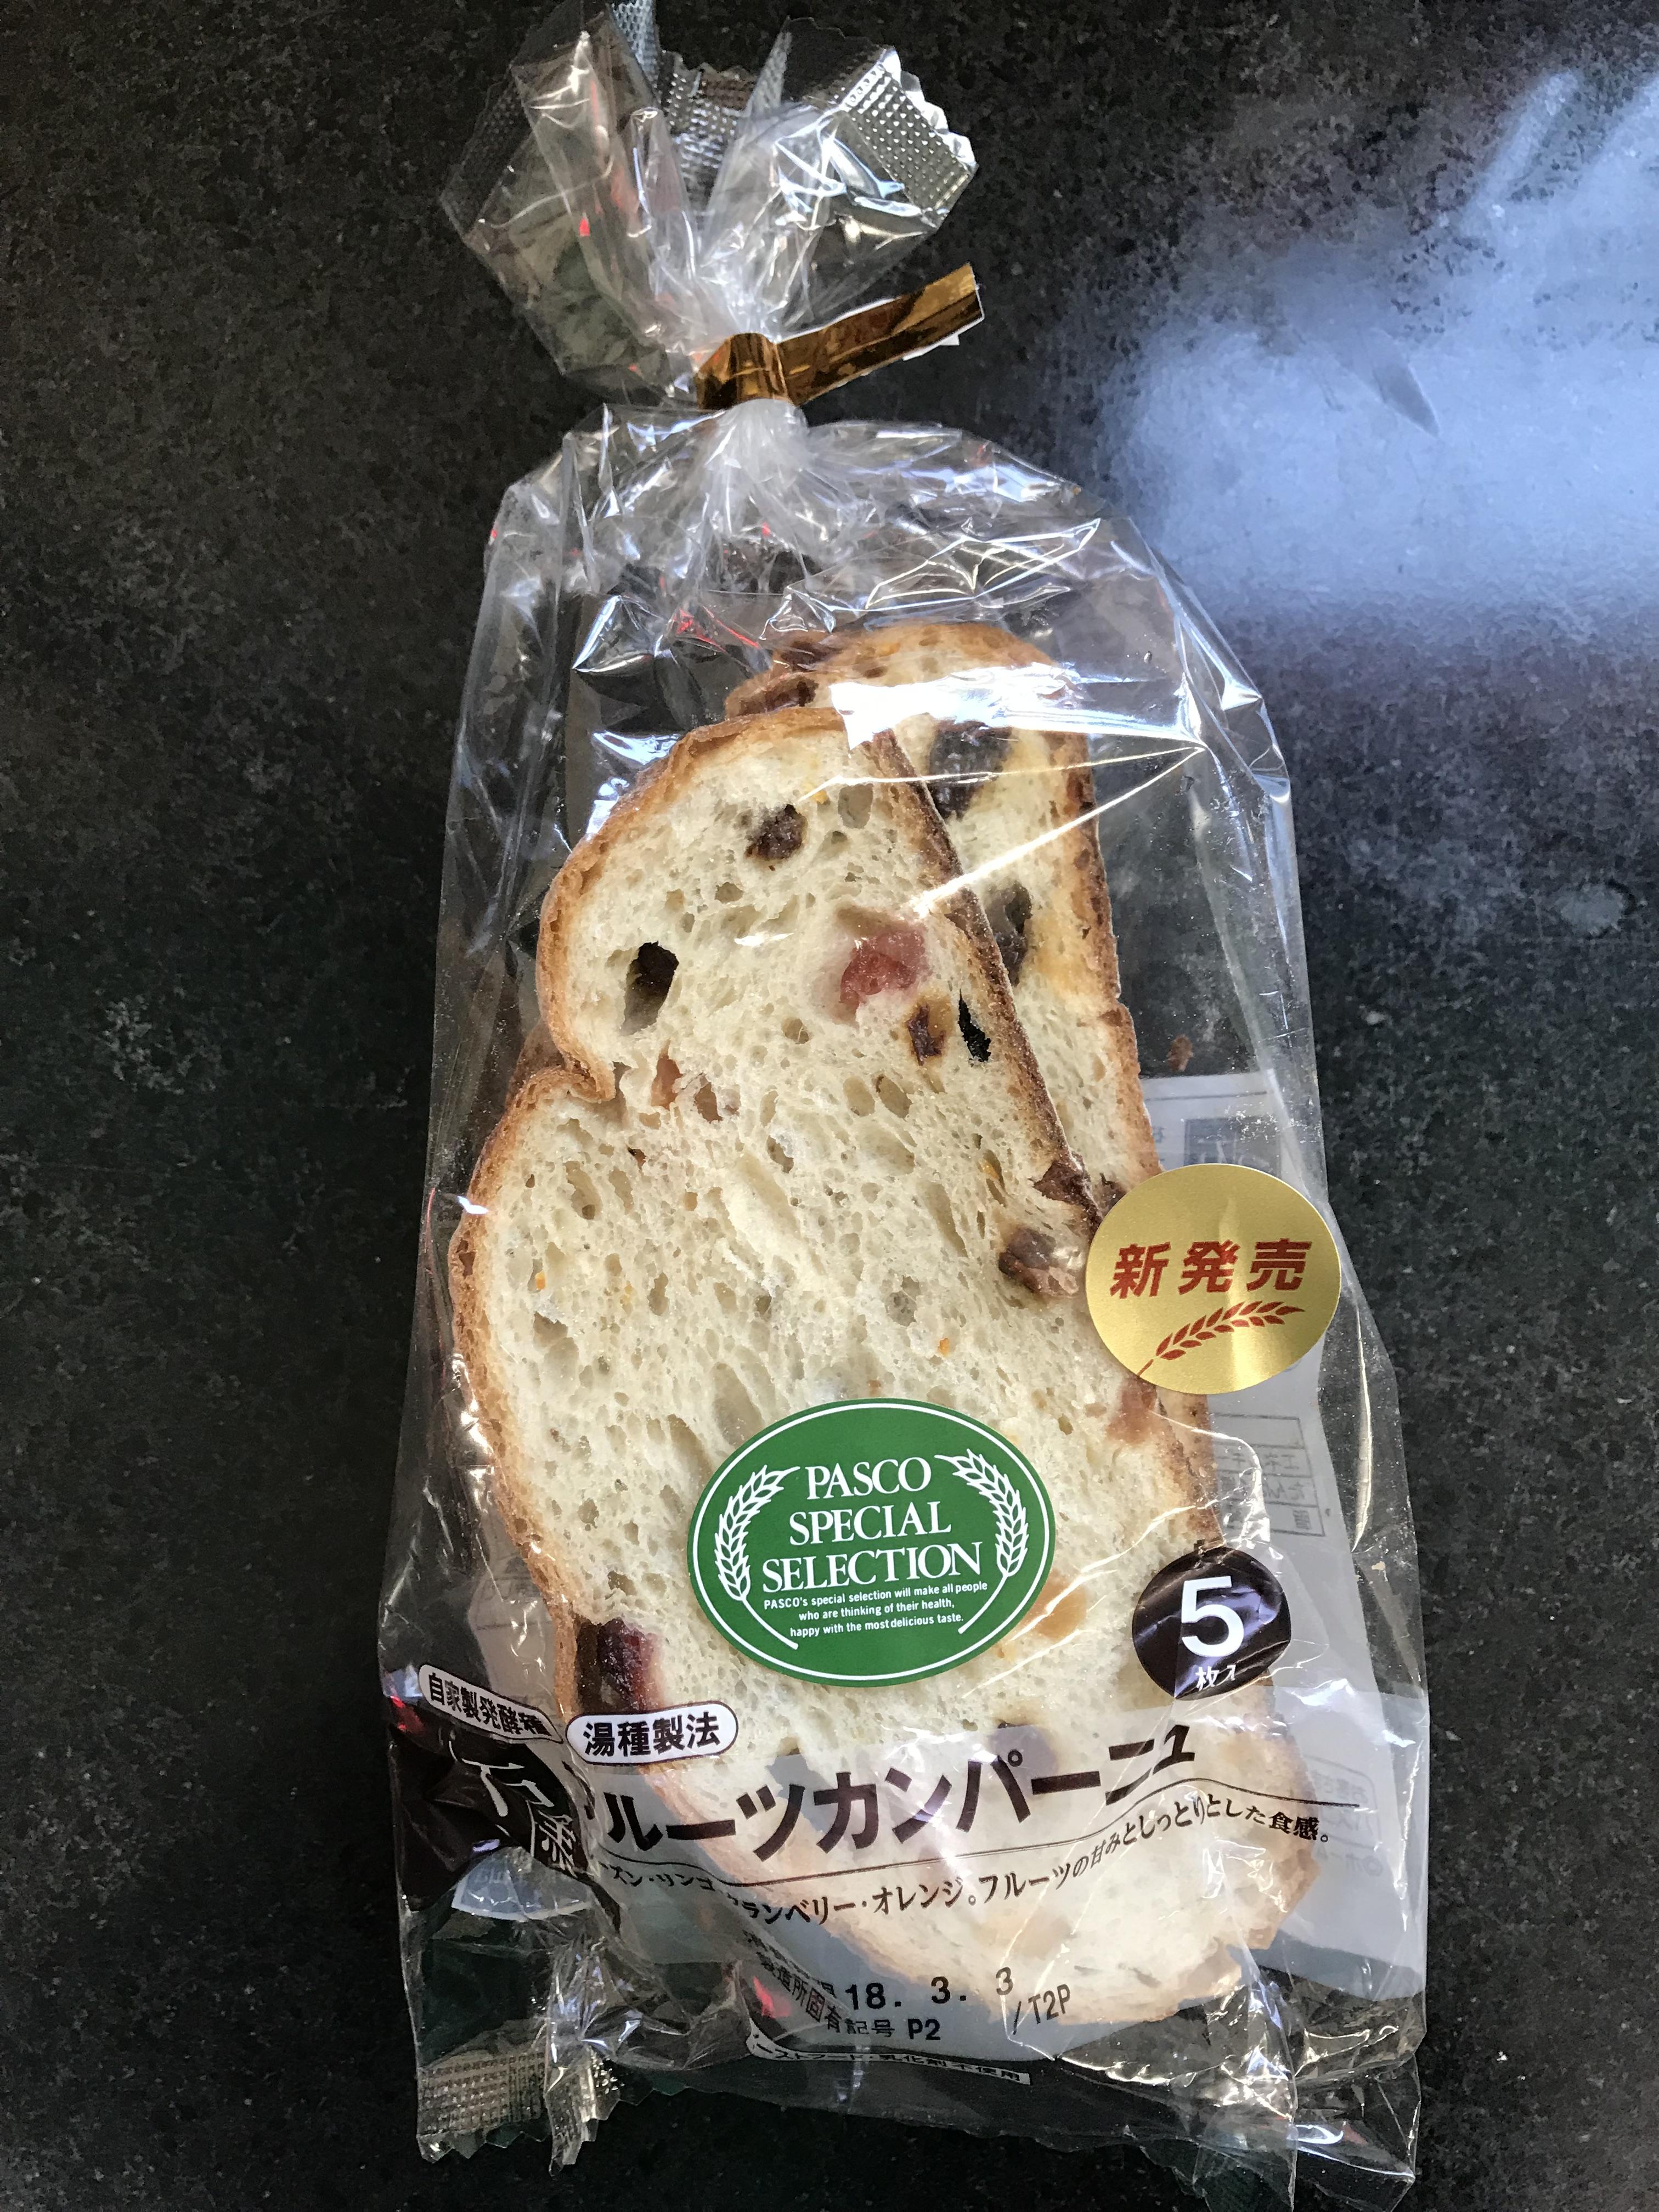 敷島製パン パスコＰＳＳフルーツカンパーニュ 5枚入 (JAN: 4901820393548)